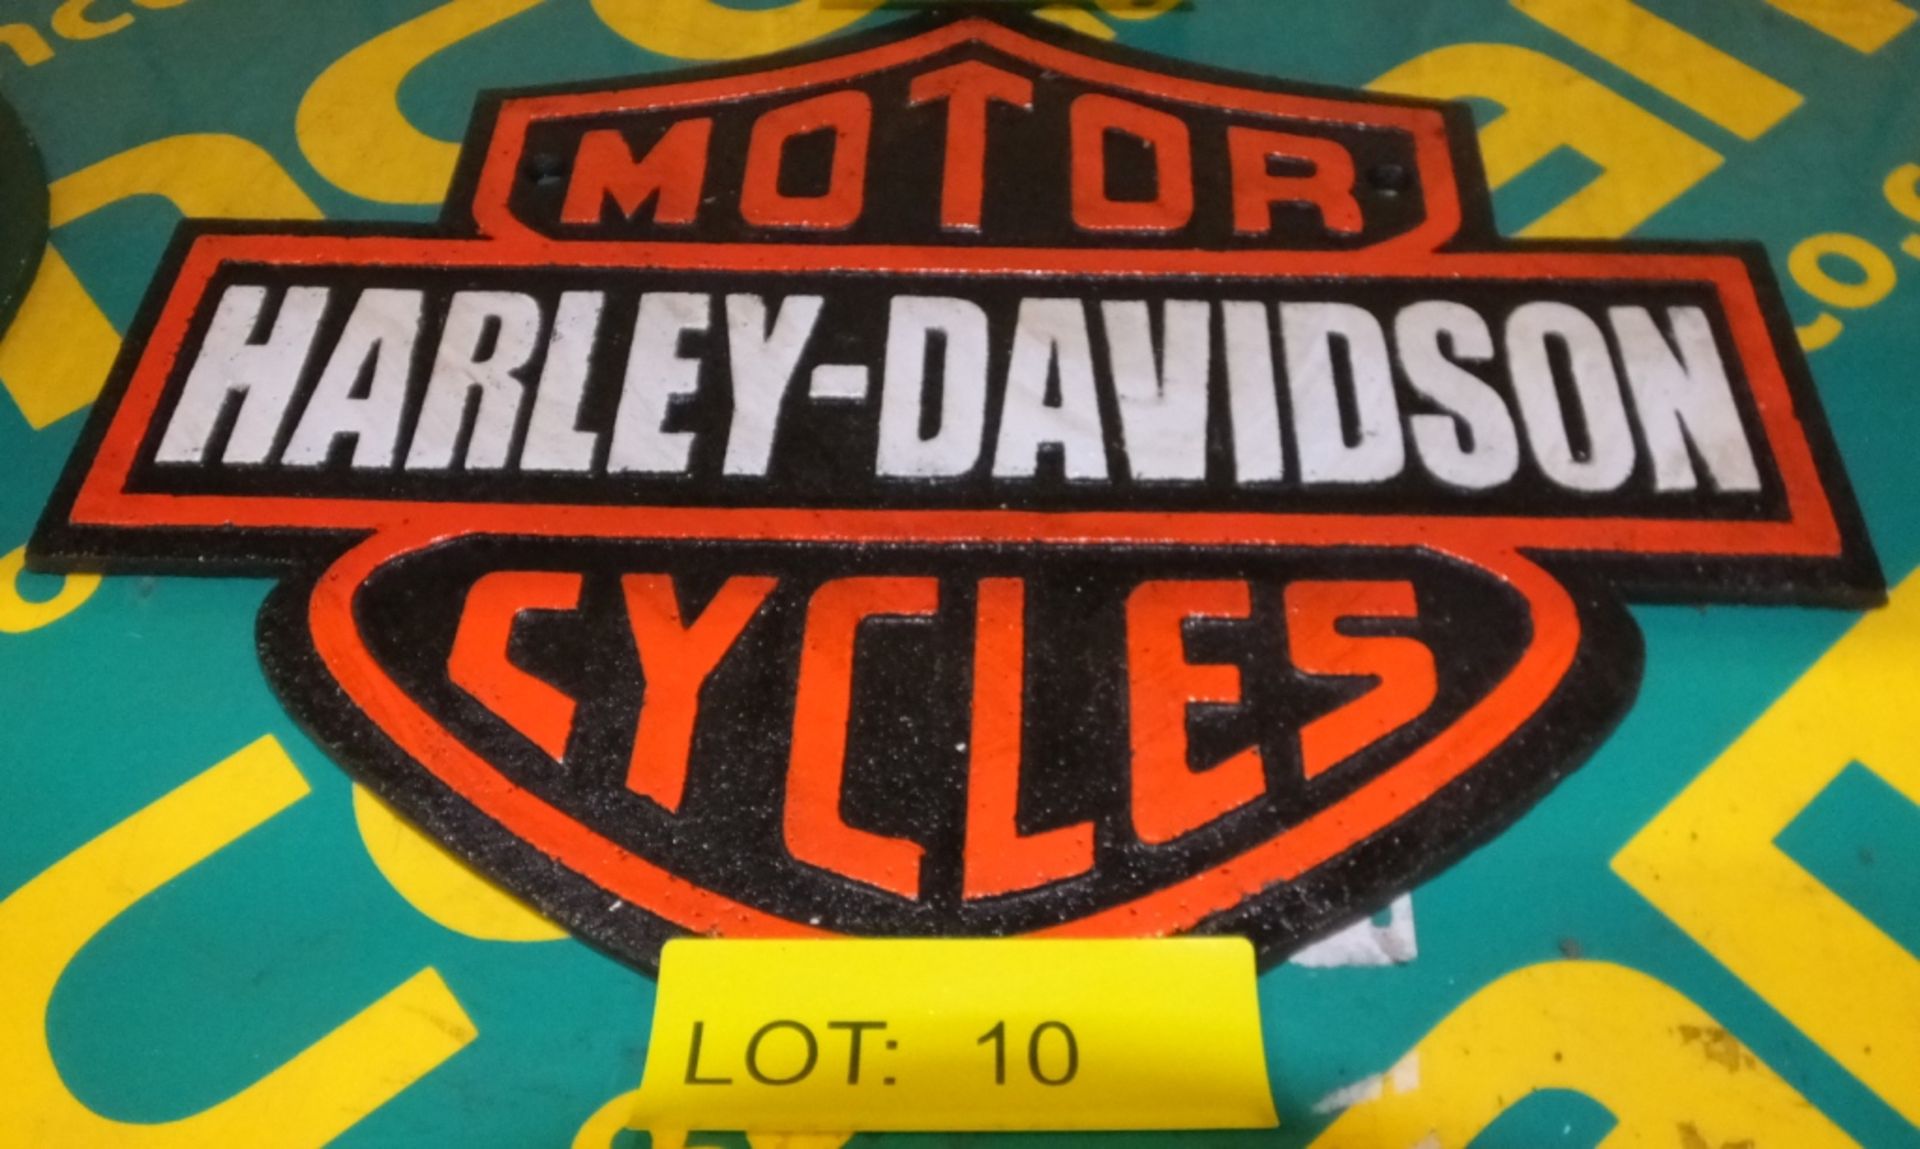 Cast Motorbike sign - Harley Davidson